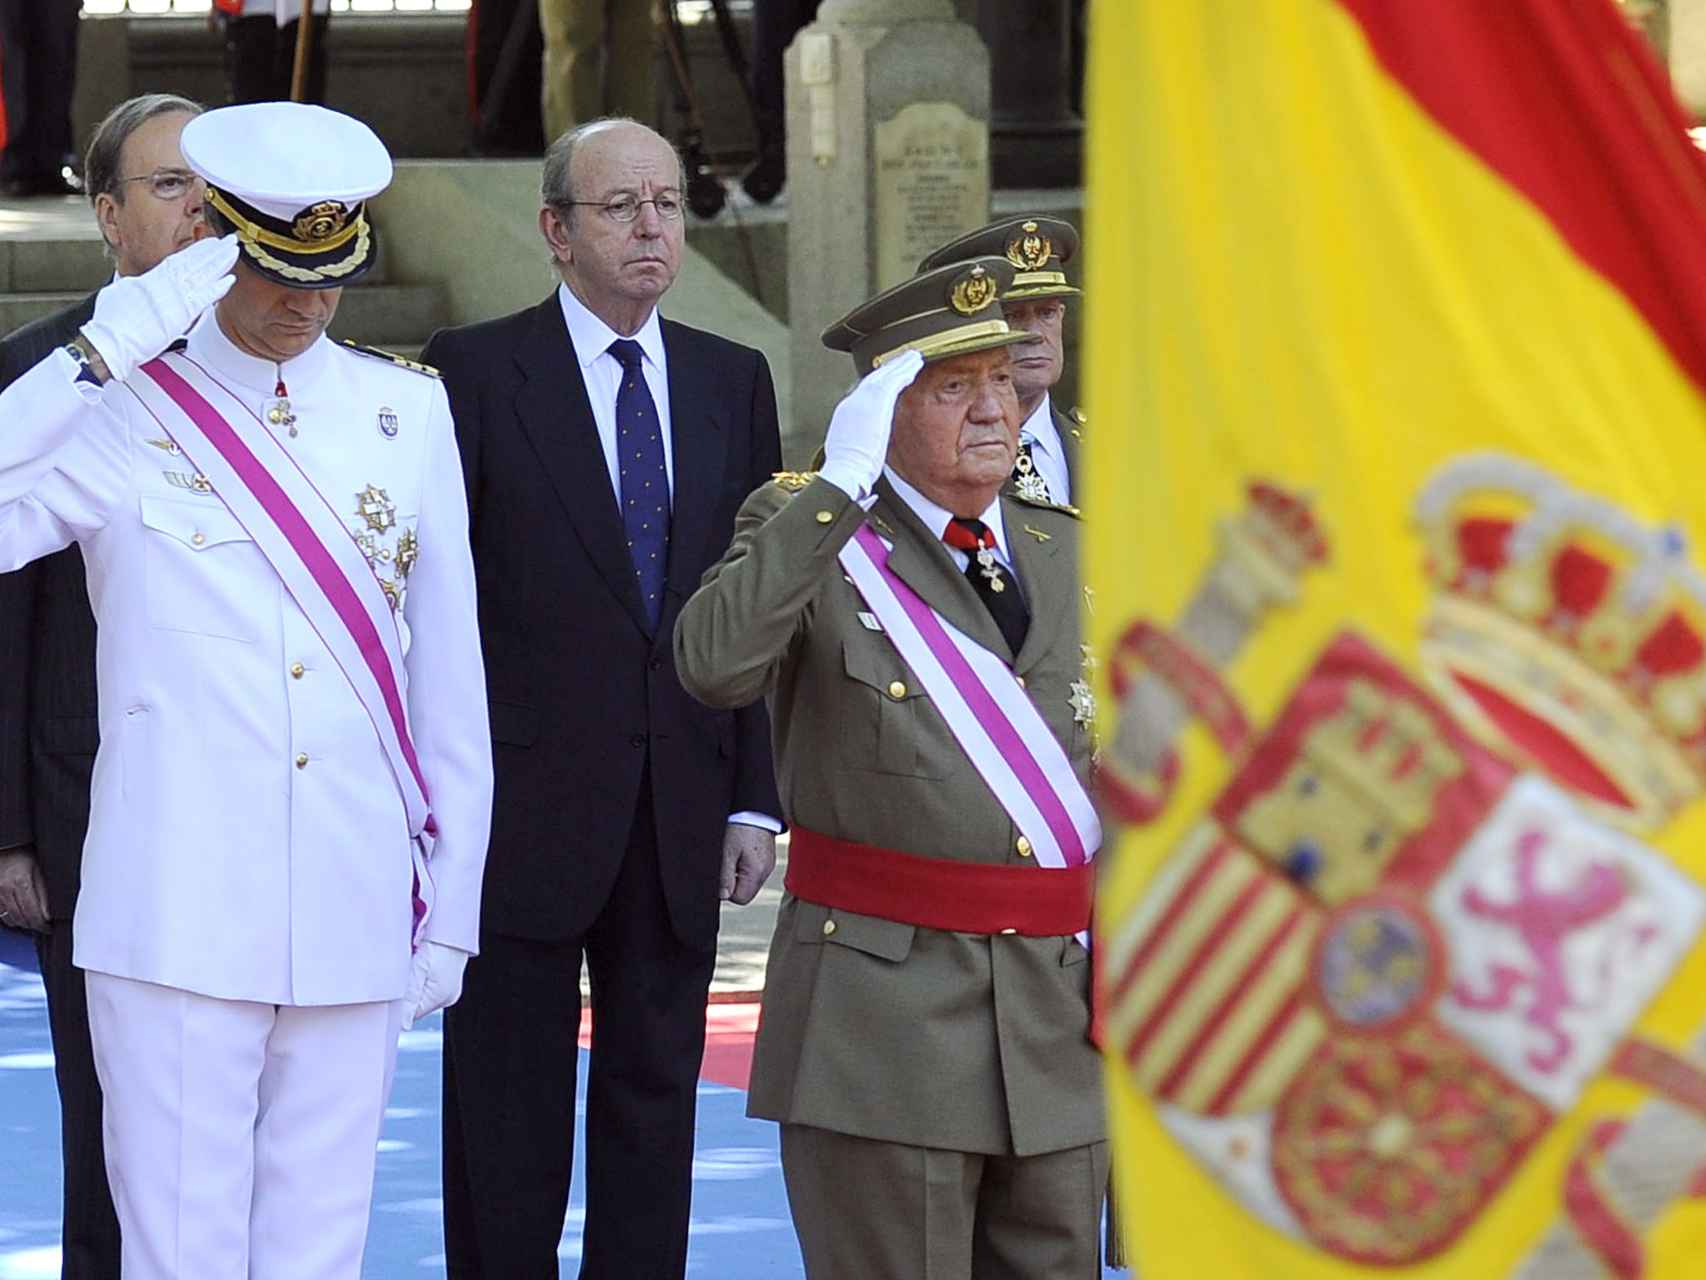 Rafael Spottorno, entre el rey Juan Carlos y su hijo, durante un acto oficial.